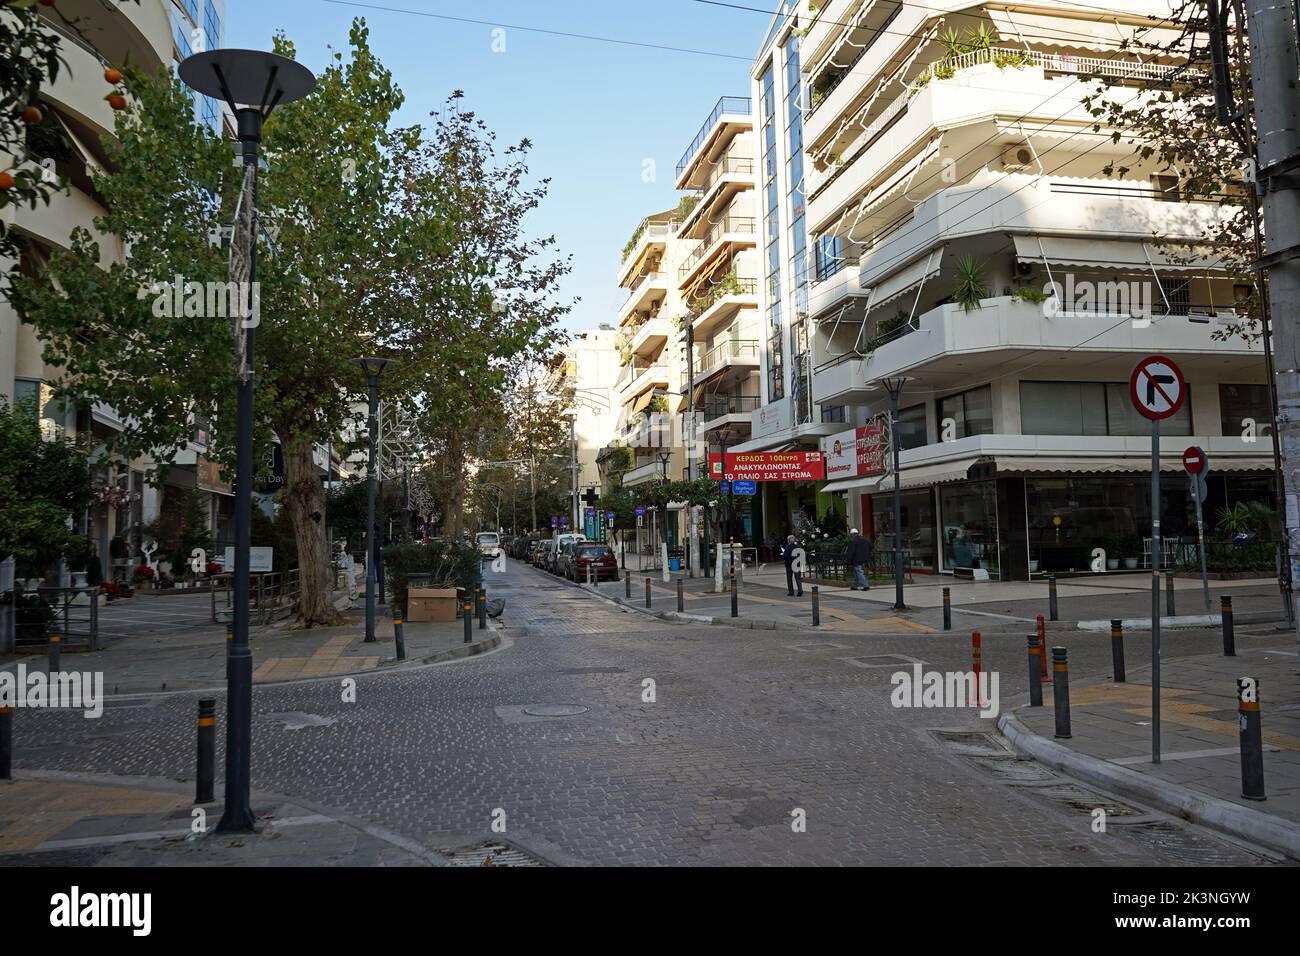 Palaio Faliro, Athen Griechenland - 19-12-2019: Seirinon und Agiou Alexandrou Straße im Zentrum von Palaio Faliro, Athen. Stockfoto